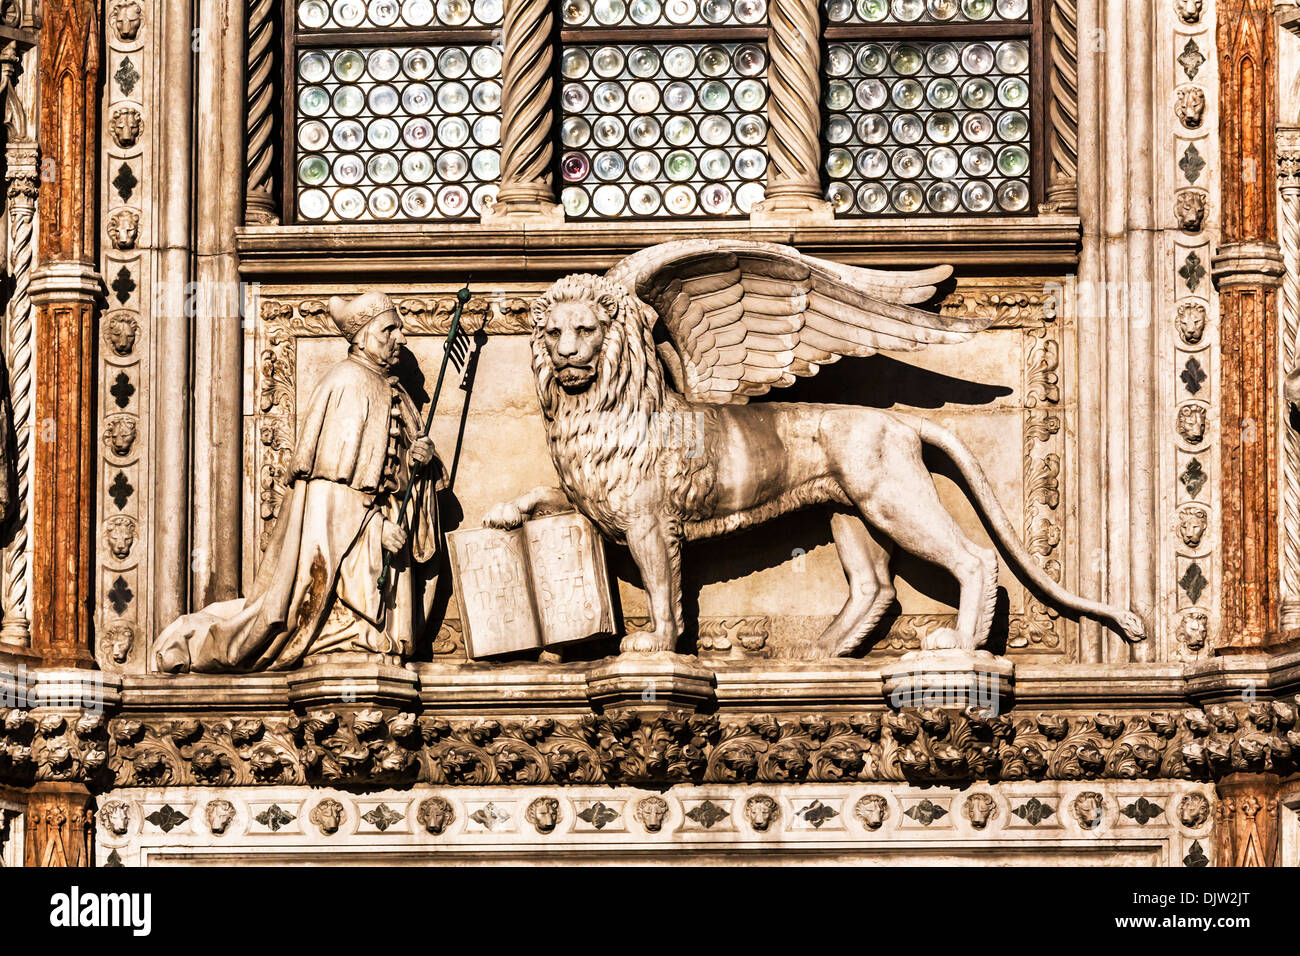 Dettaglio colpo di un leone alato con un libro aperto sopra la porta della carta ingresso al Palazzo del Doge di Venezia, Veneto, Italia. Foto Stock